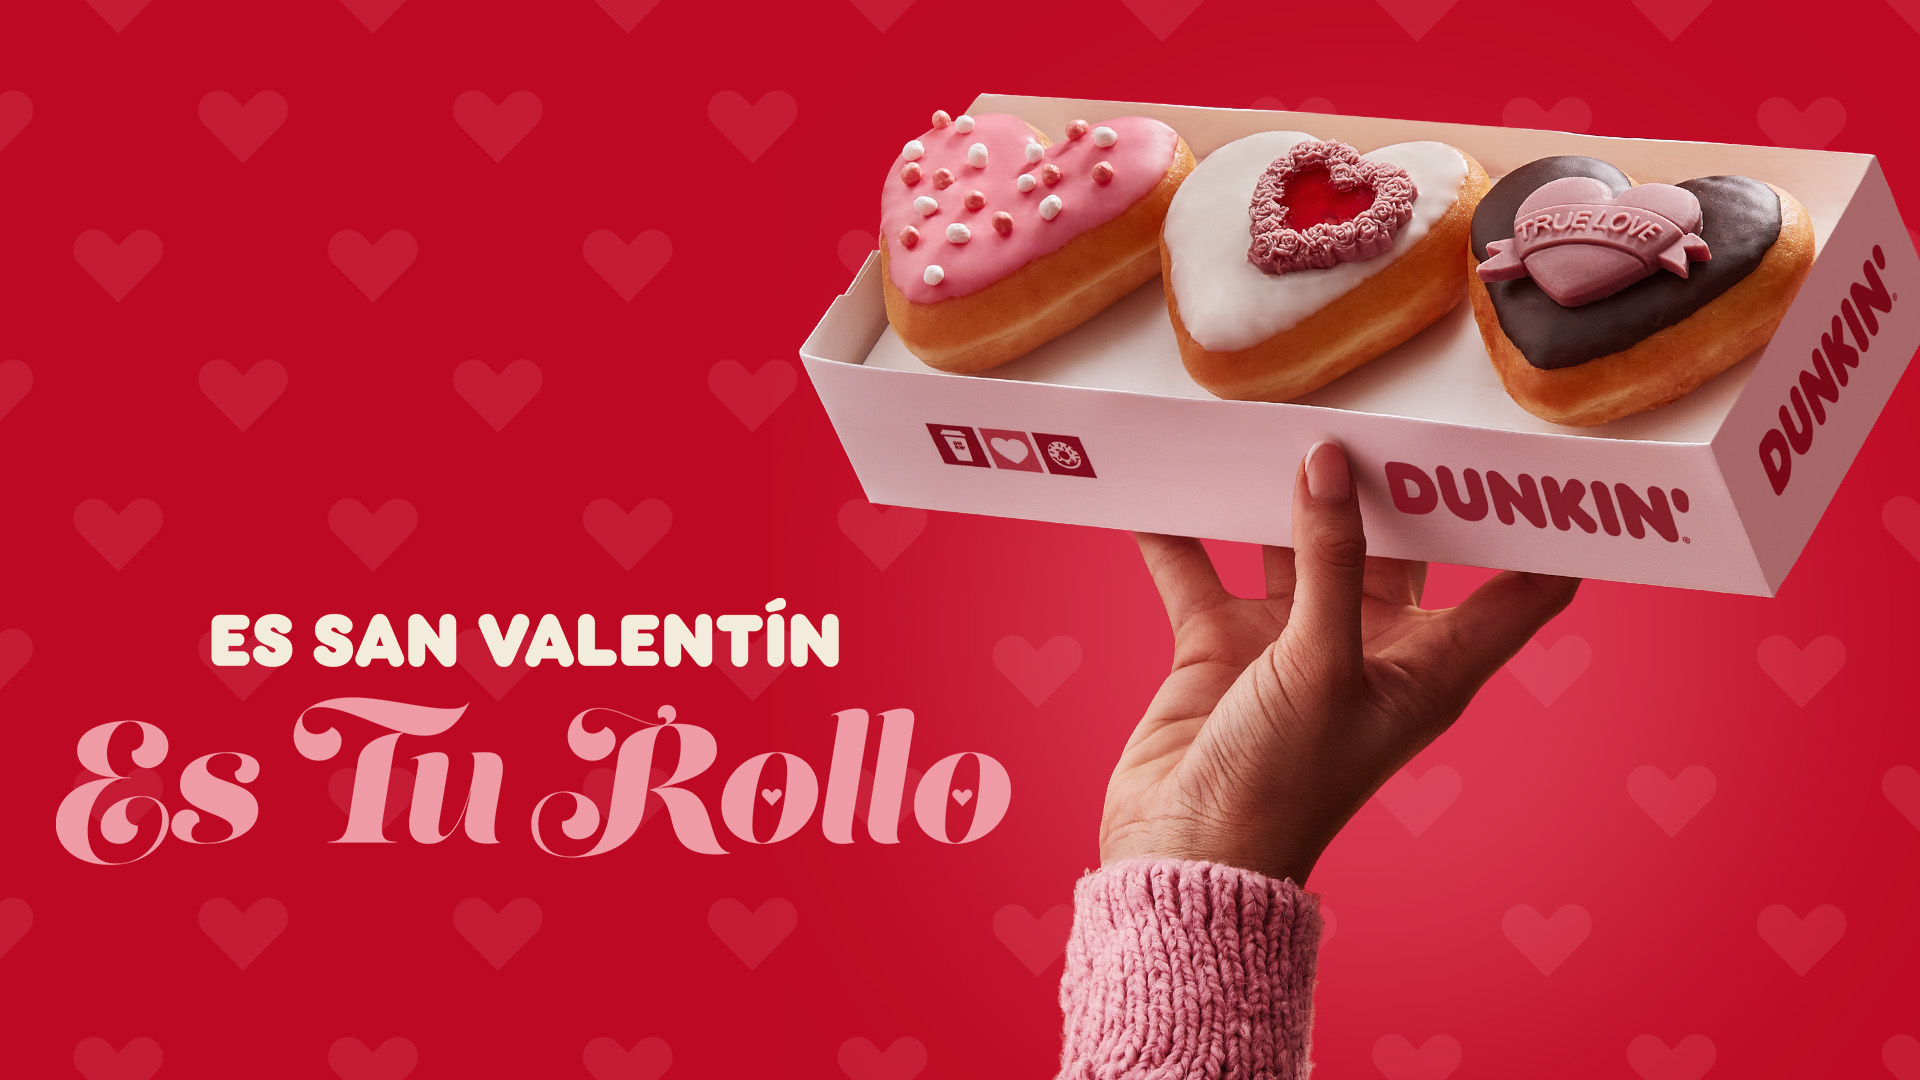 Disfrutar de Dunkin’ en San Valentín, es tu rollo